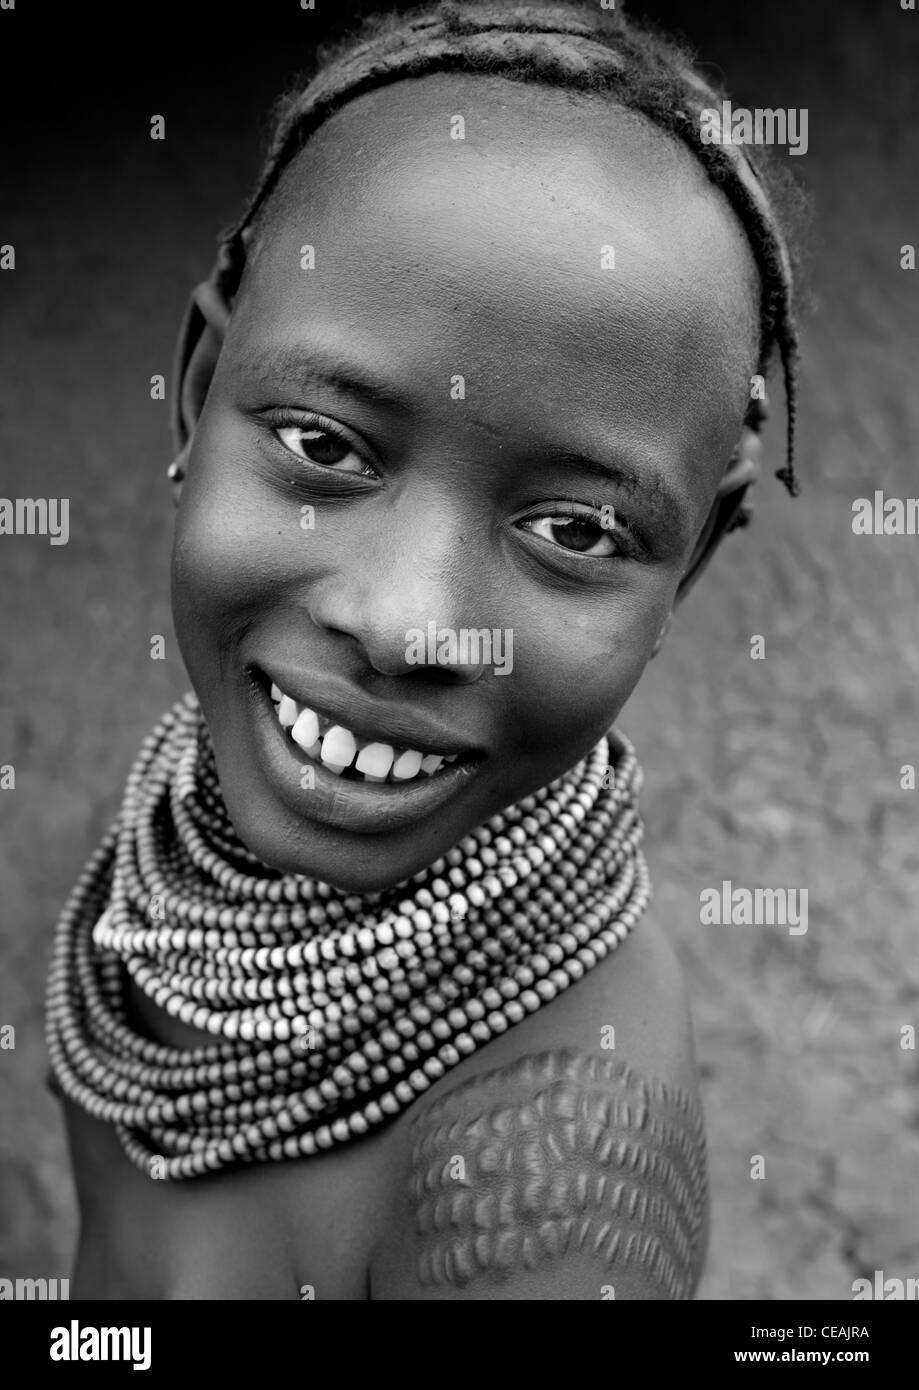 Joven chica con Dassanech Scarified hombro y collares sonrisa retrato Omorate Etiopía Foto de stock